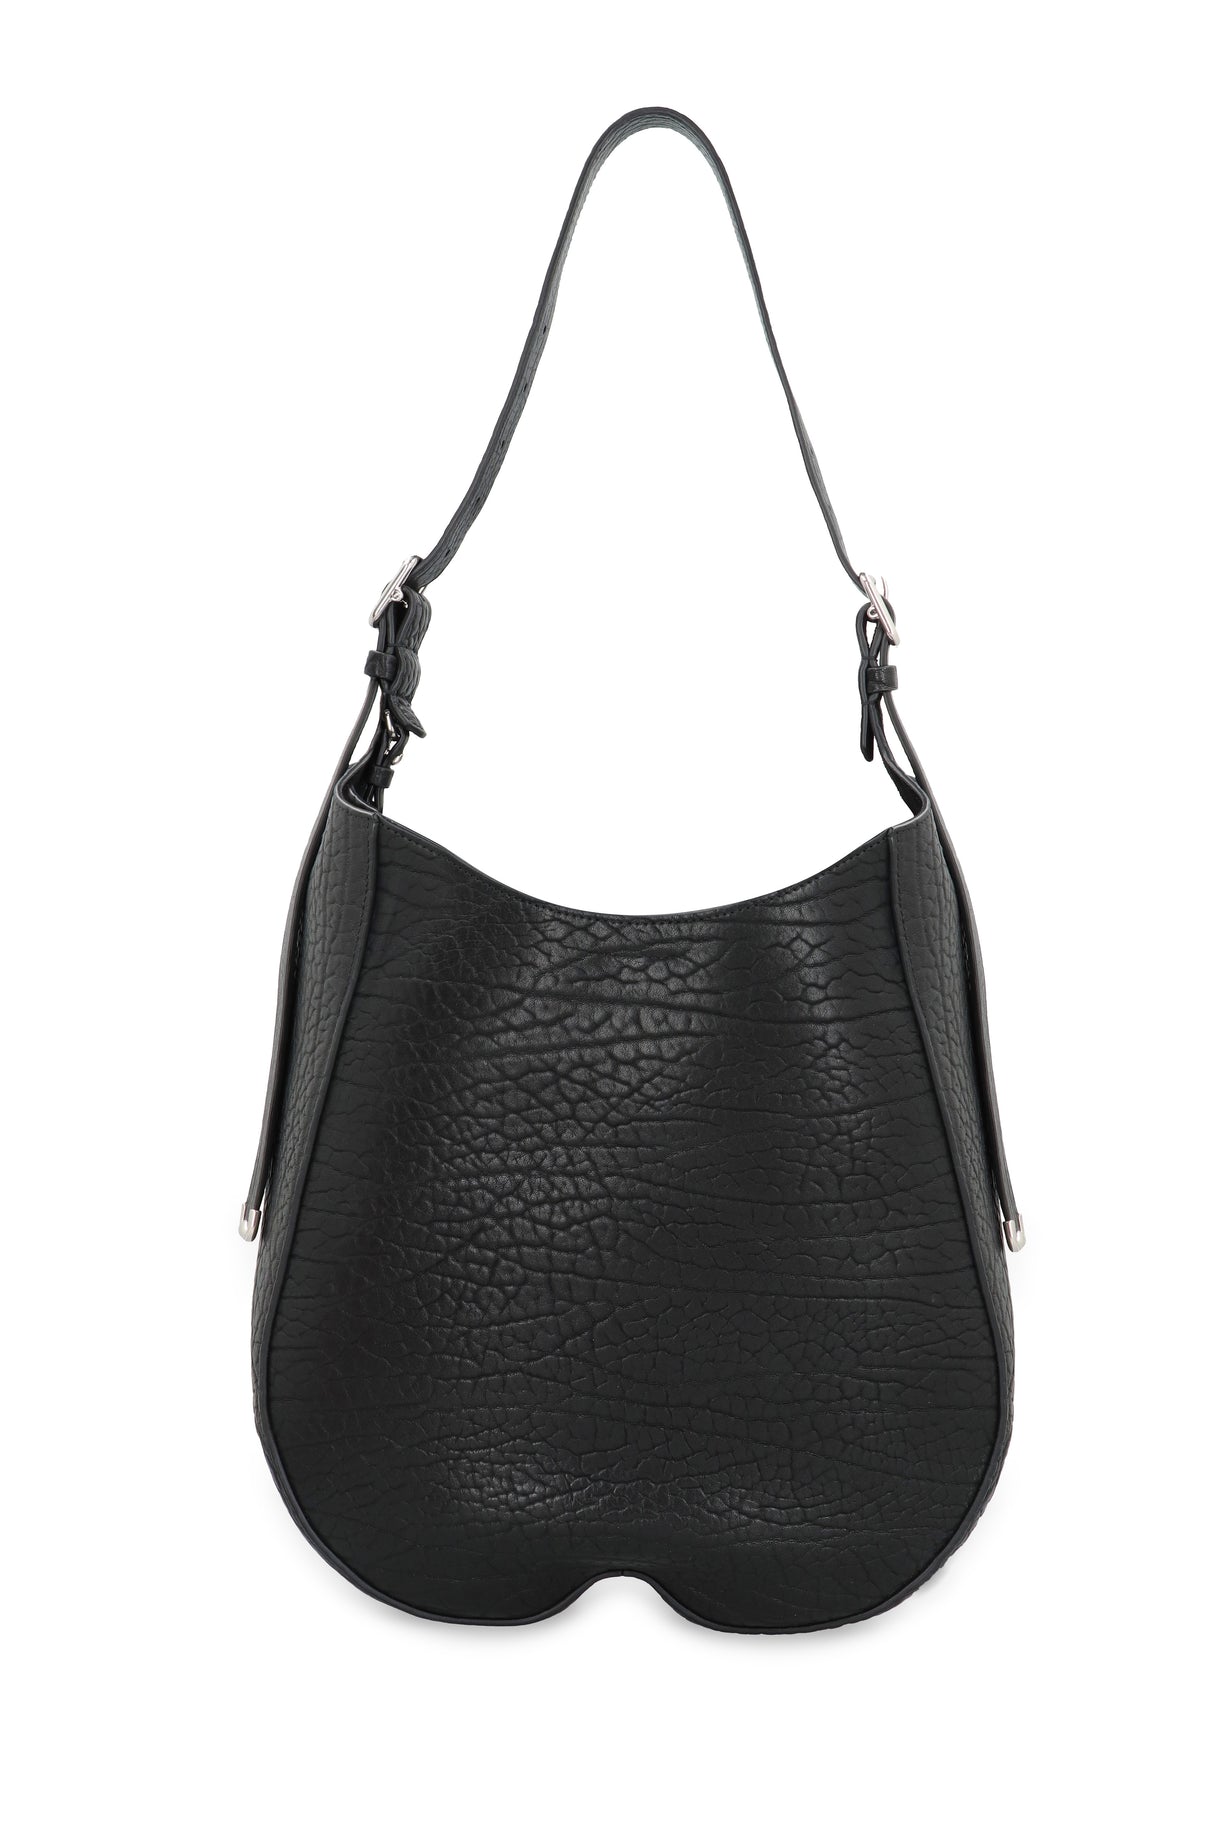 Túi xách đeo chéo da màu đen sang trọng cho phụ nữ - FW23